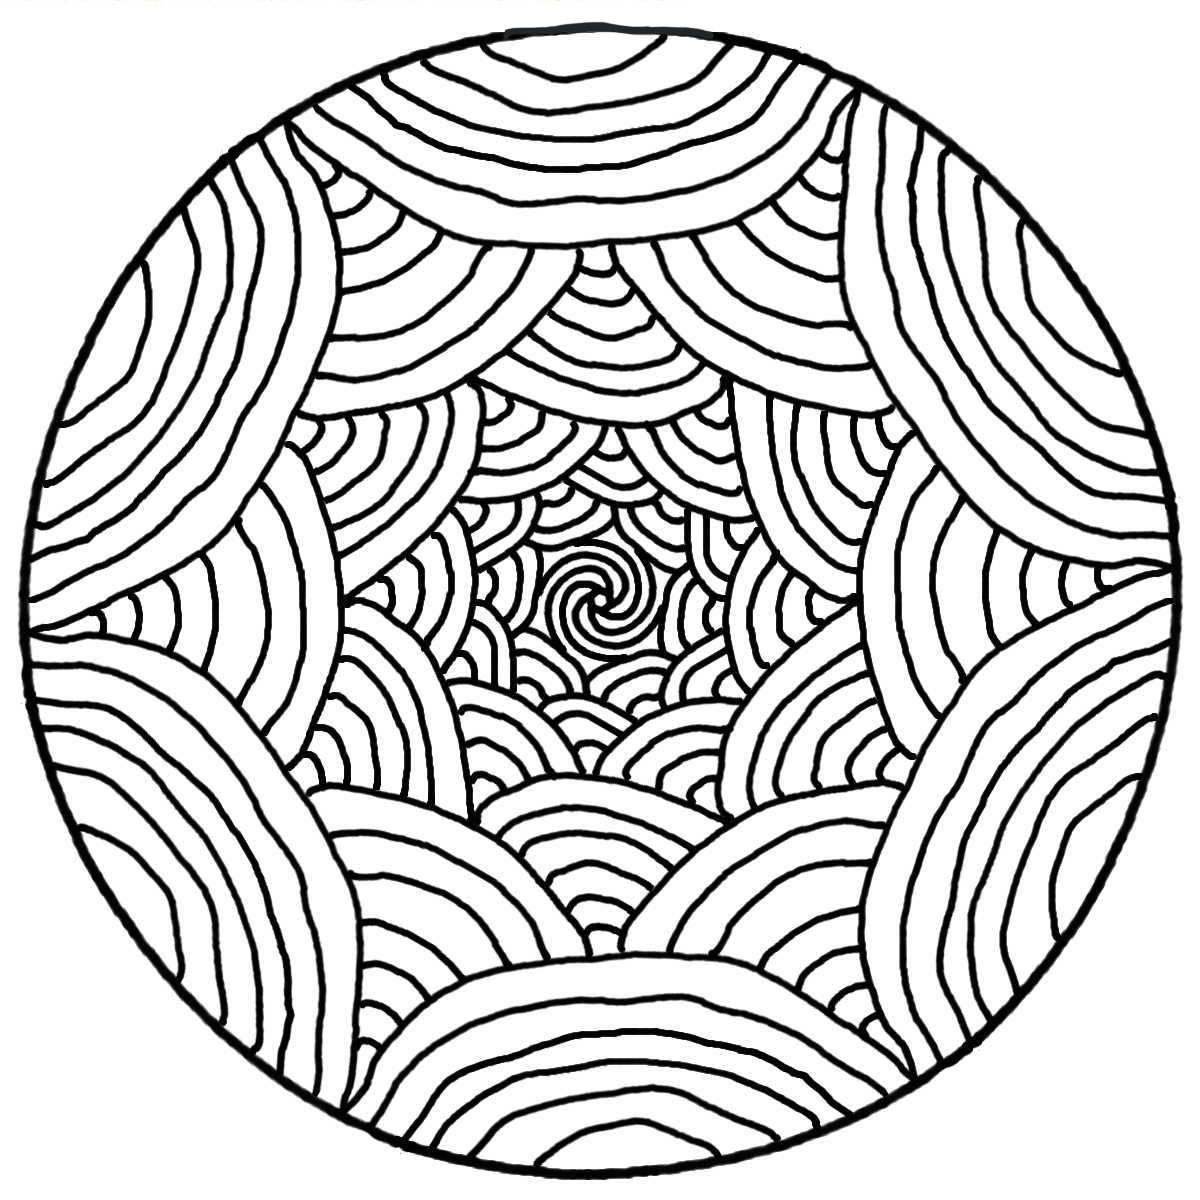 Coloriage Illusion D optique Facile Mandala illusion d'optique - Mandalas Zen & Anti-stress